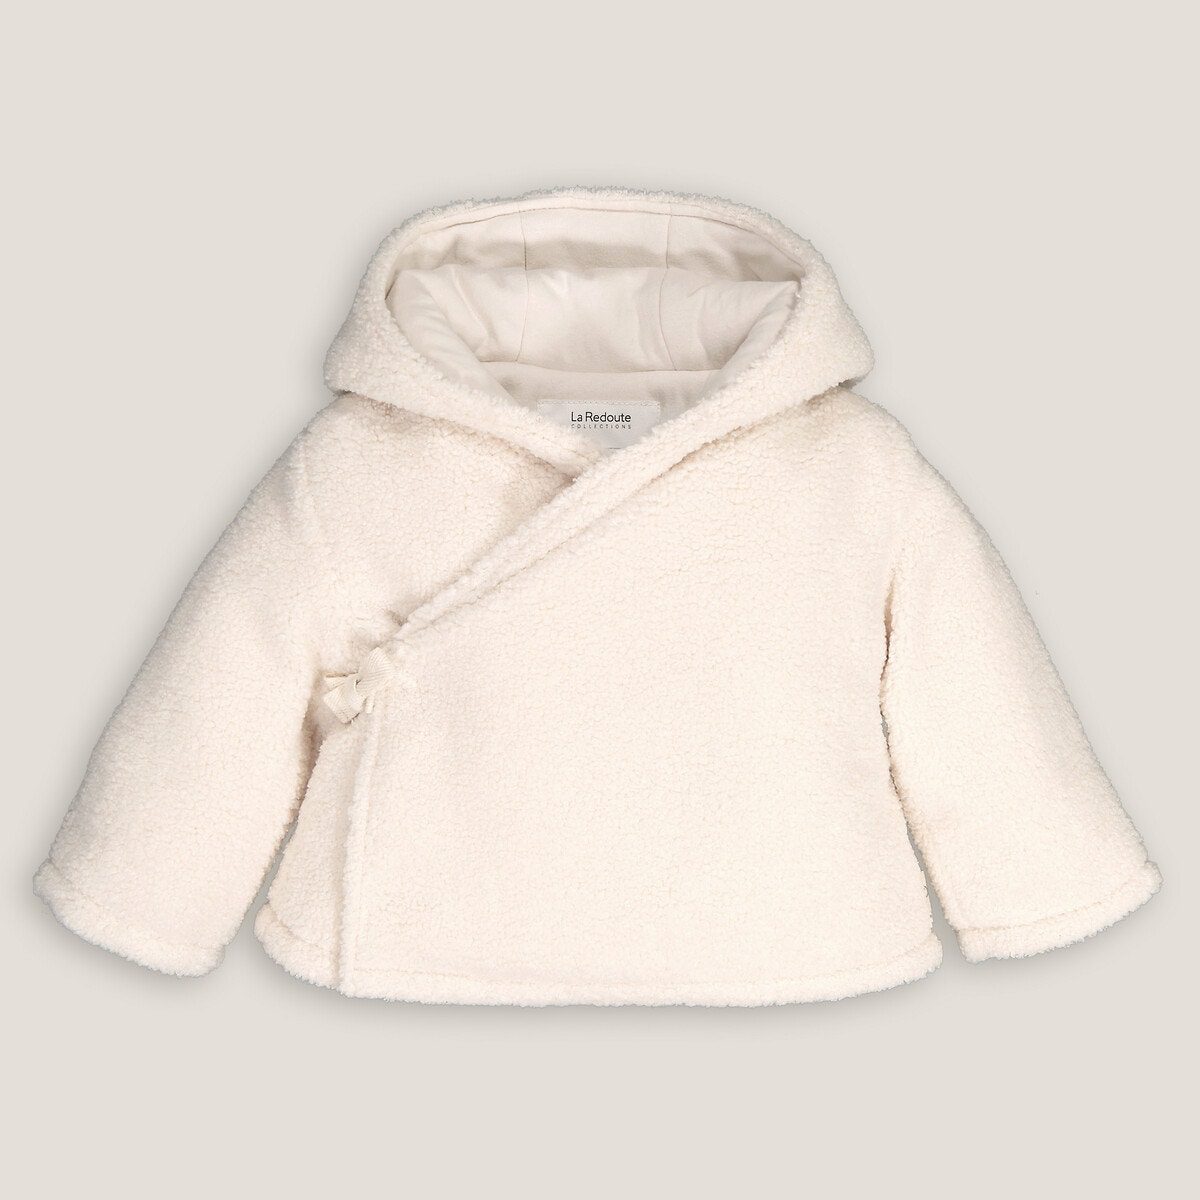 Ζεστό παλτό με κουκούλα από συνθετική γούνα Μπεζ